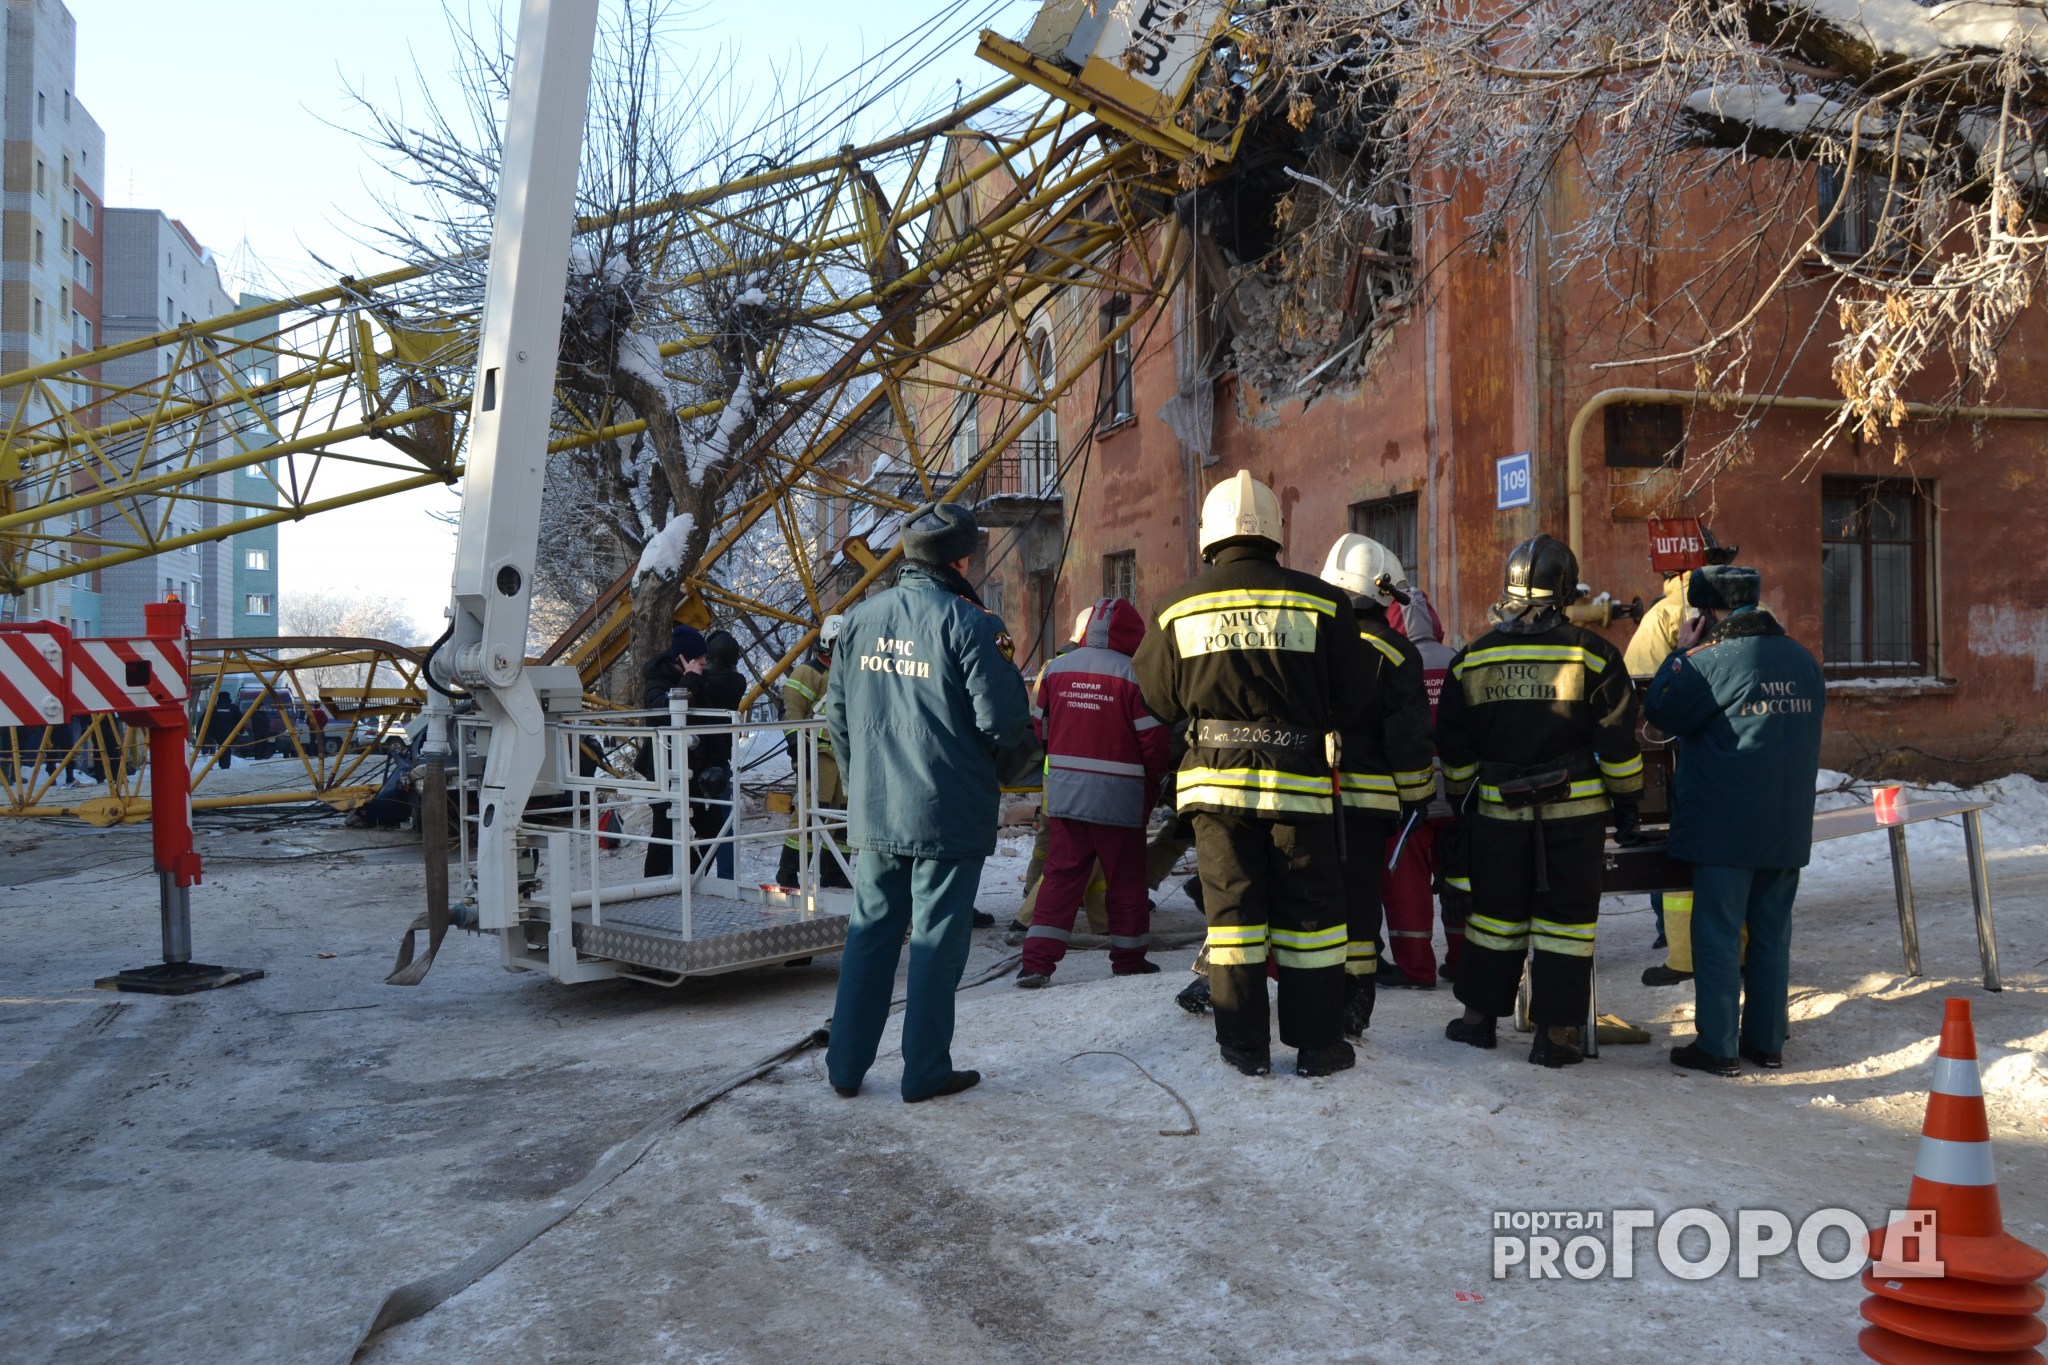 Спасатели до последнего надеялись, что машинист останется жить: репортаж с места падения крана в Кирове